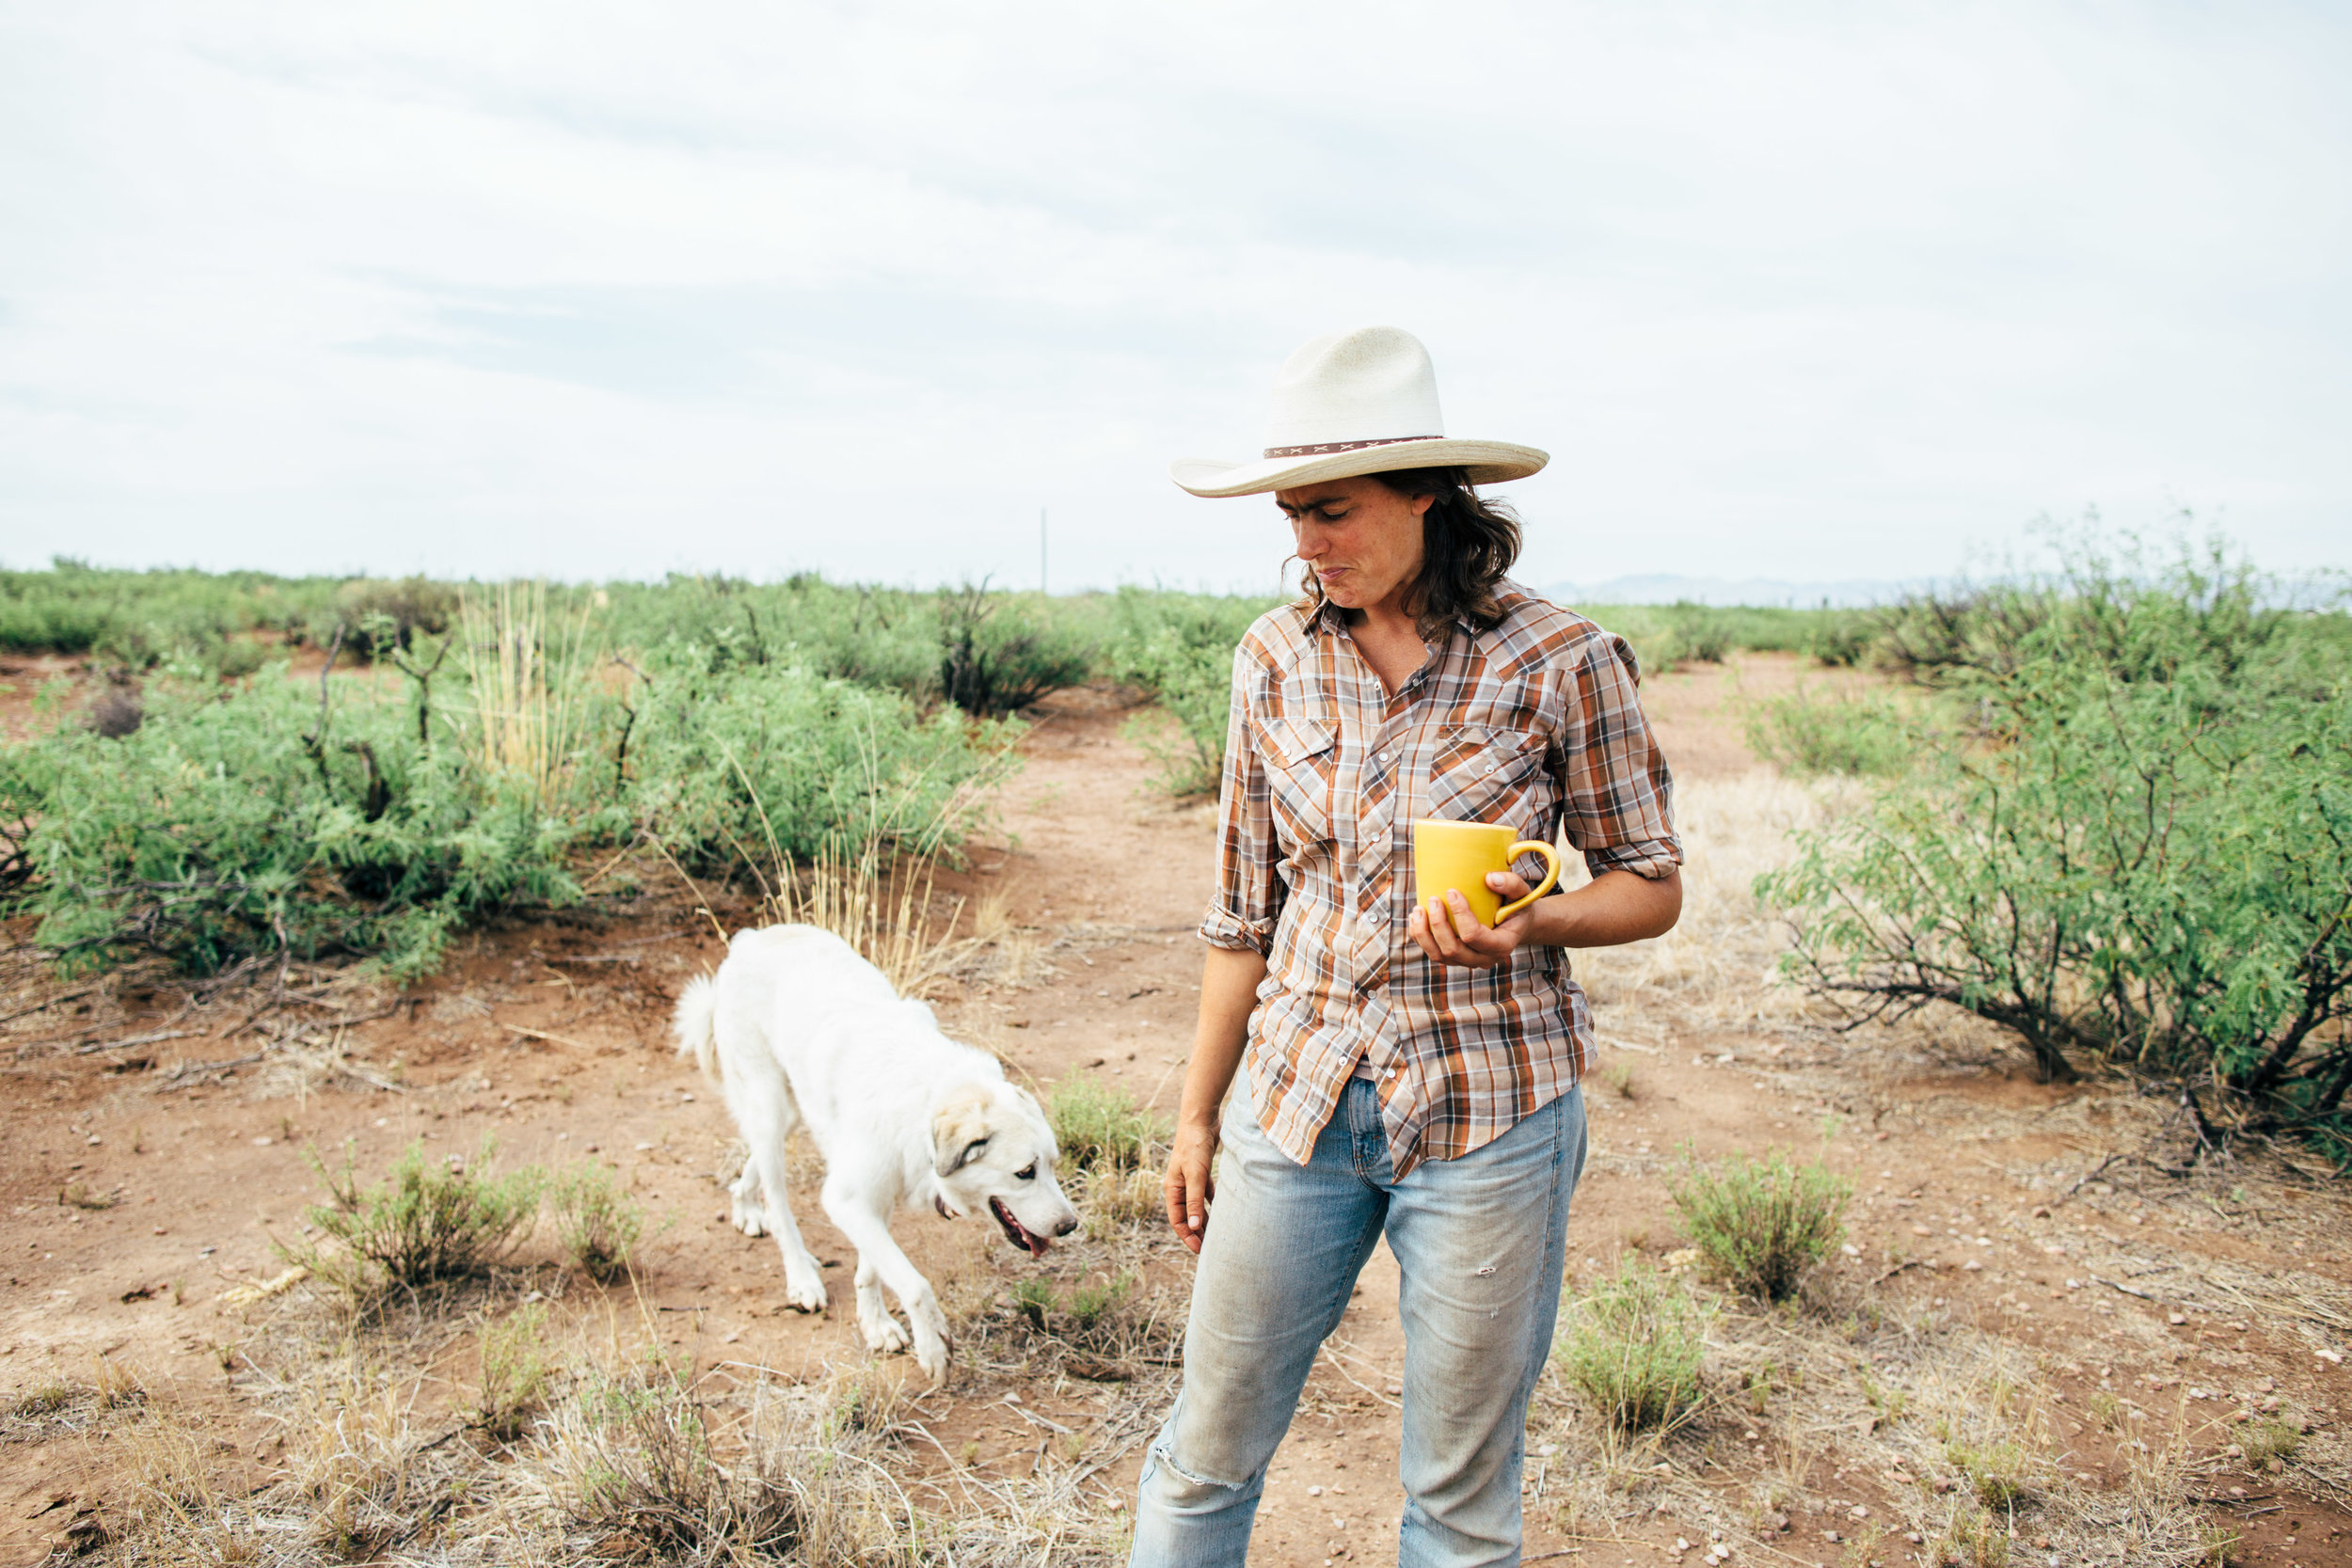 Female farmer rancher karen